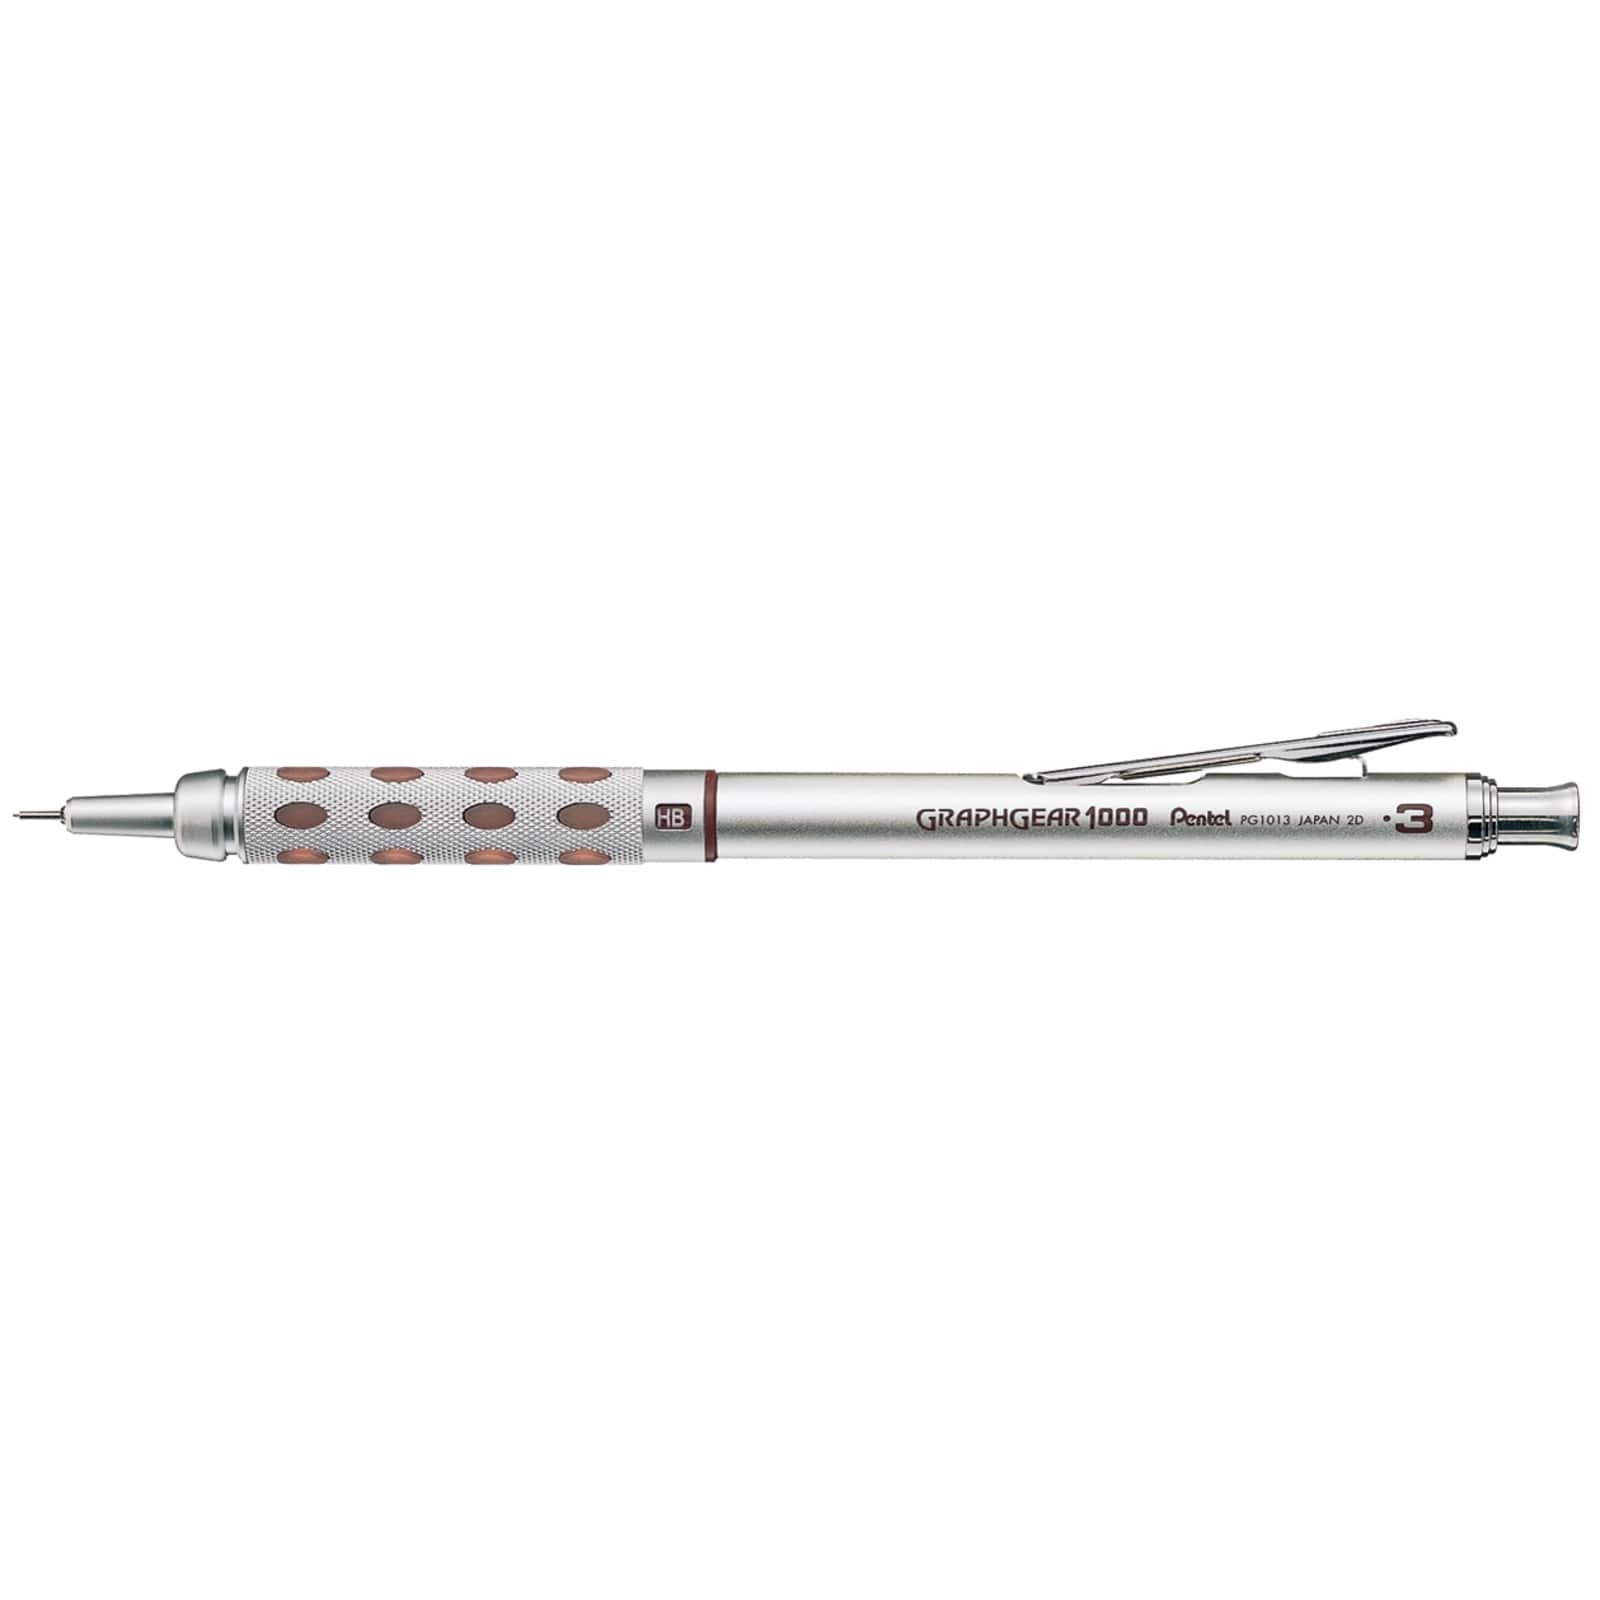  Pentel Graphgear 1000 Automatic Drafting Pencil, 0.3